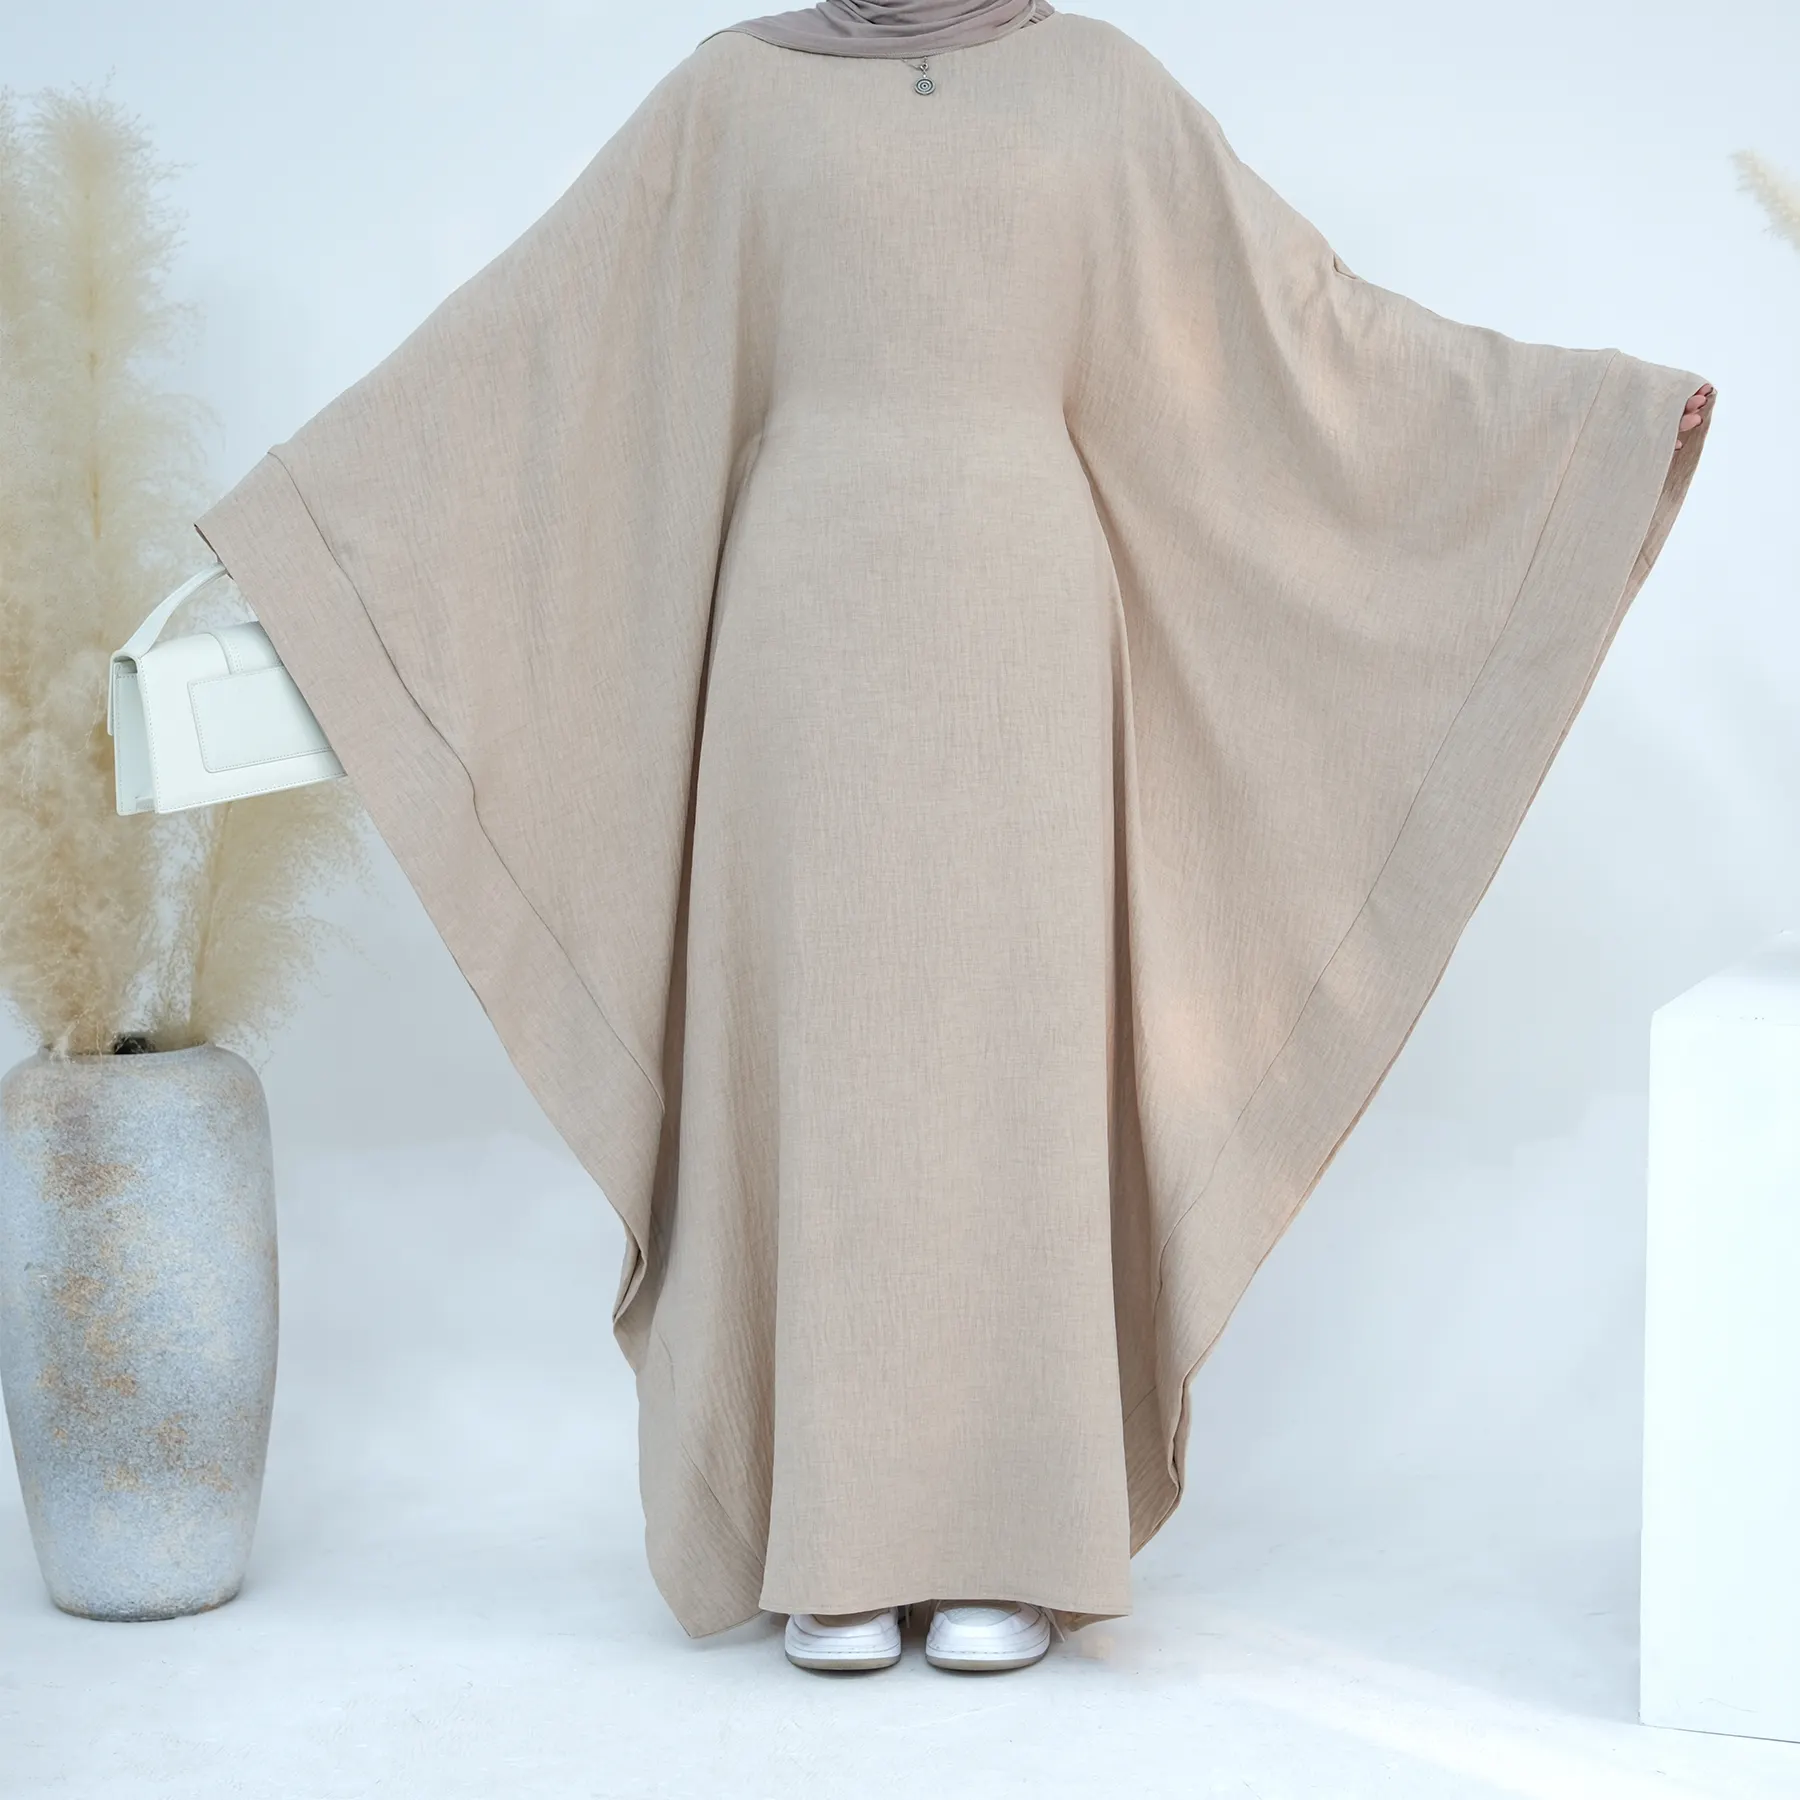 उच्च गुणवत्ता वाले ठोस रंग बैटविंग शैली कफ्तान मुस्लिम इस्लामी कपड़े दुबई अबाया महिला मुस्लिम पोशाक